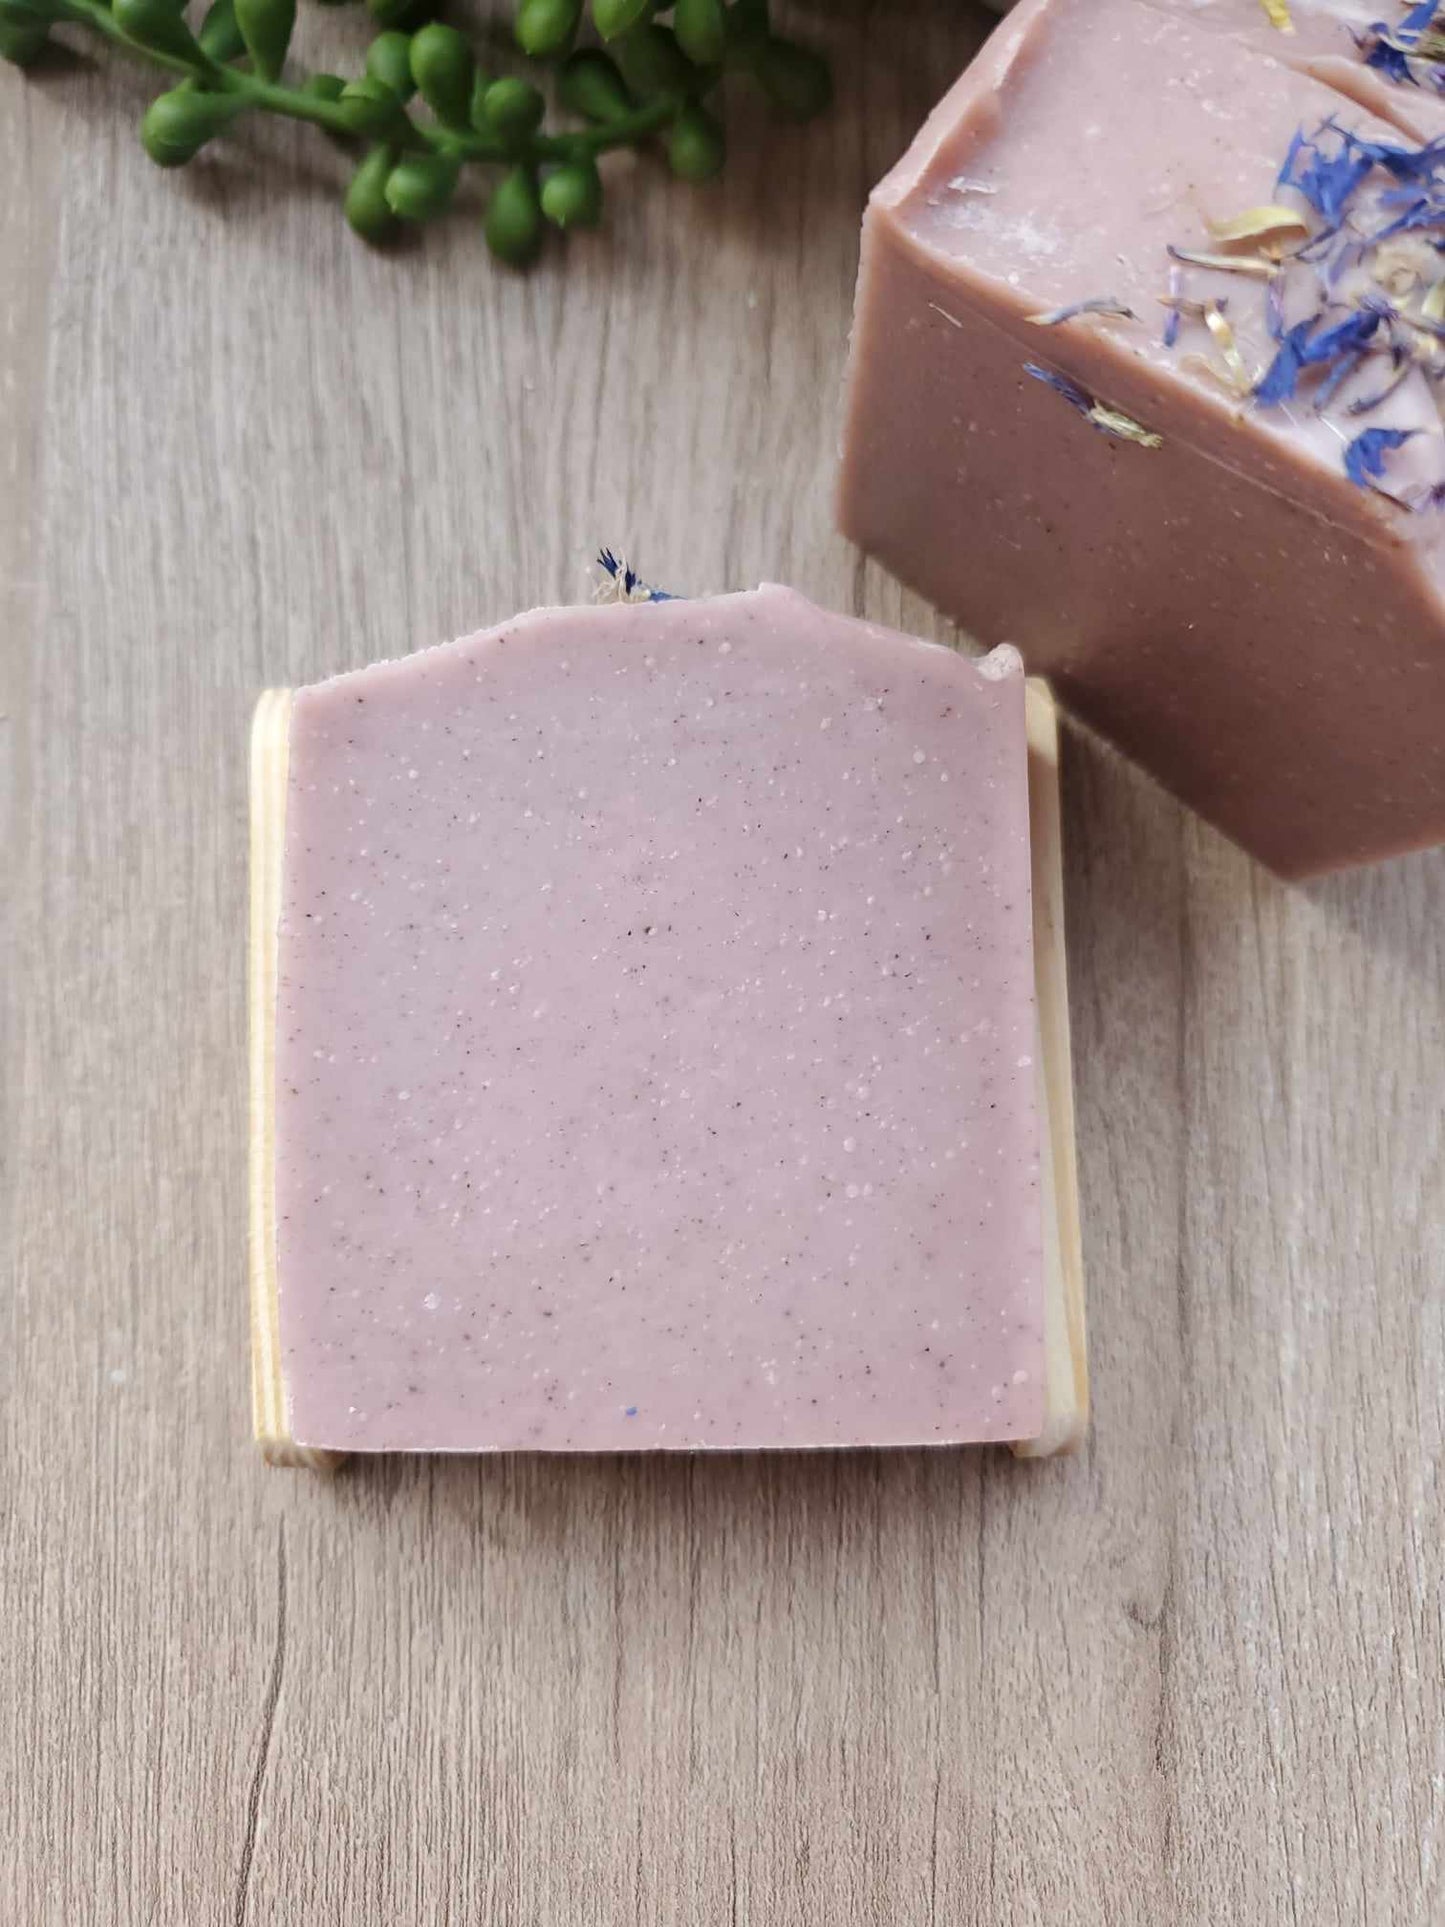 Small-batch handmade tallow soap, Asst'd